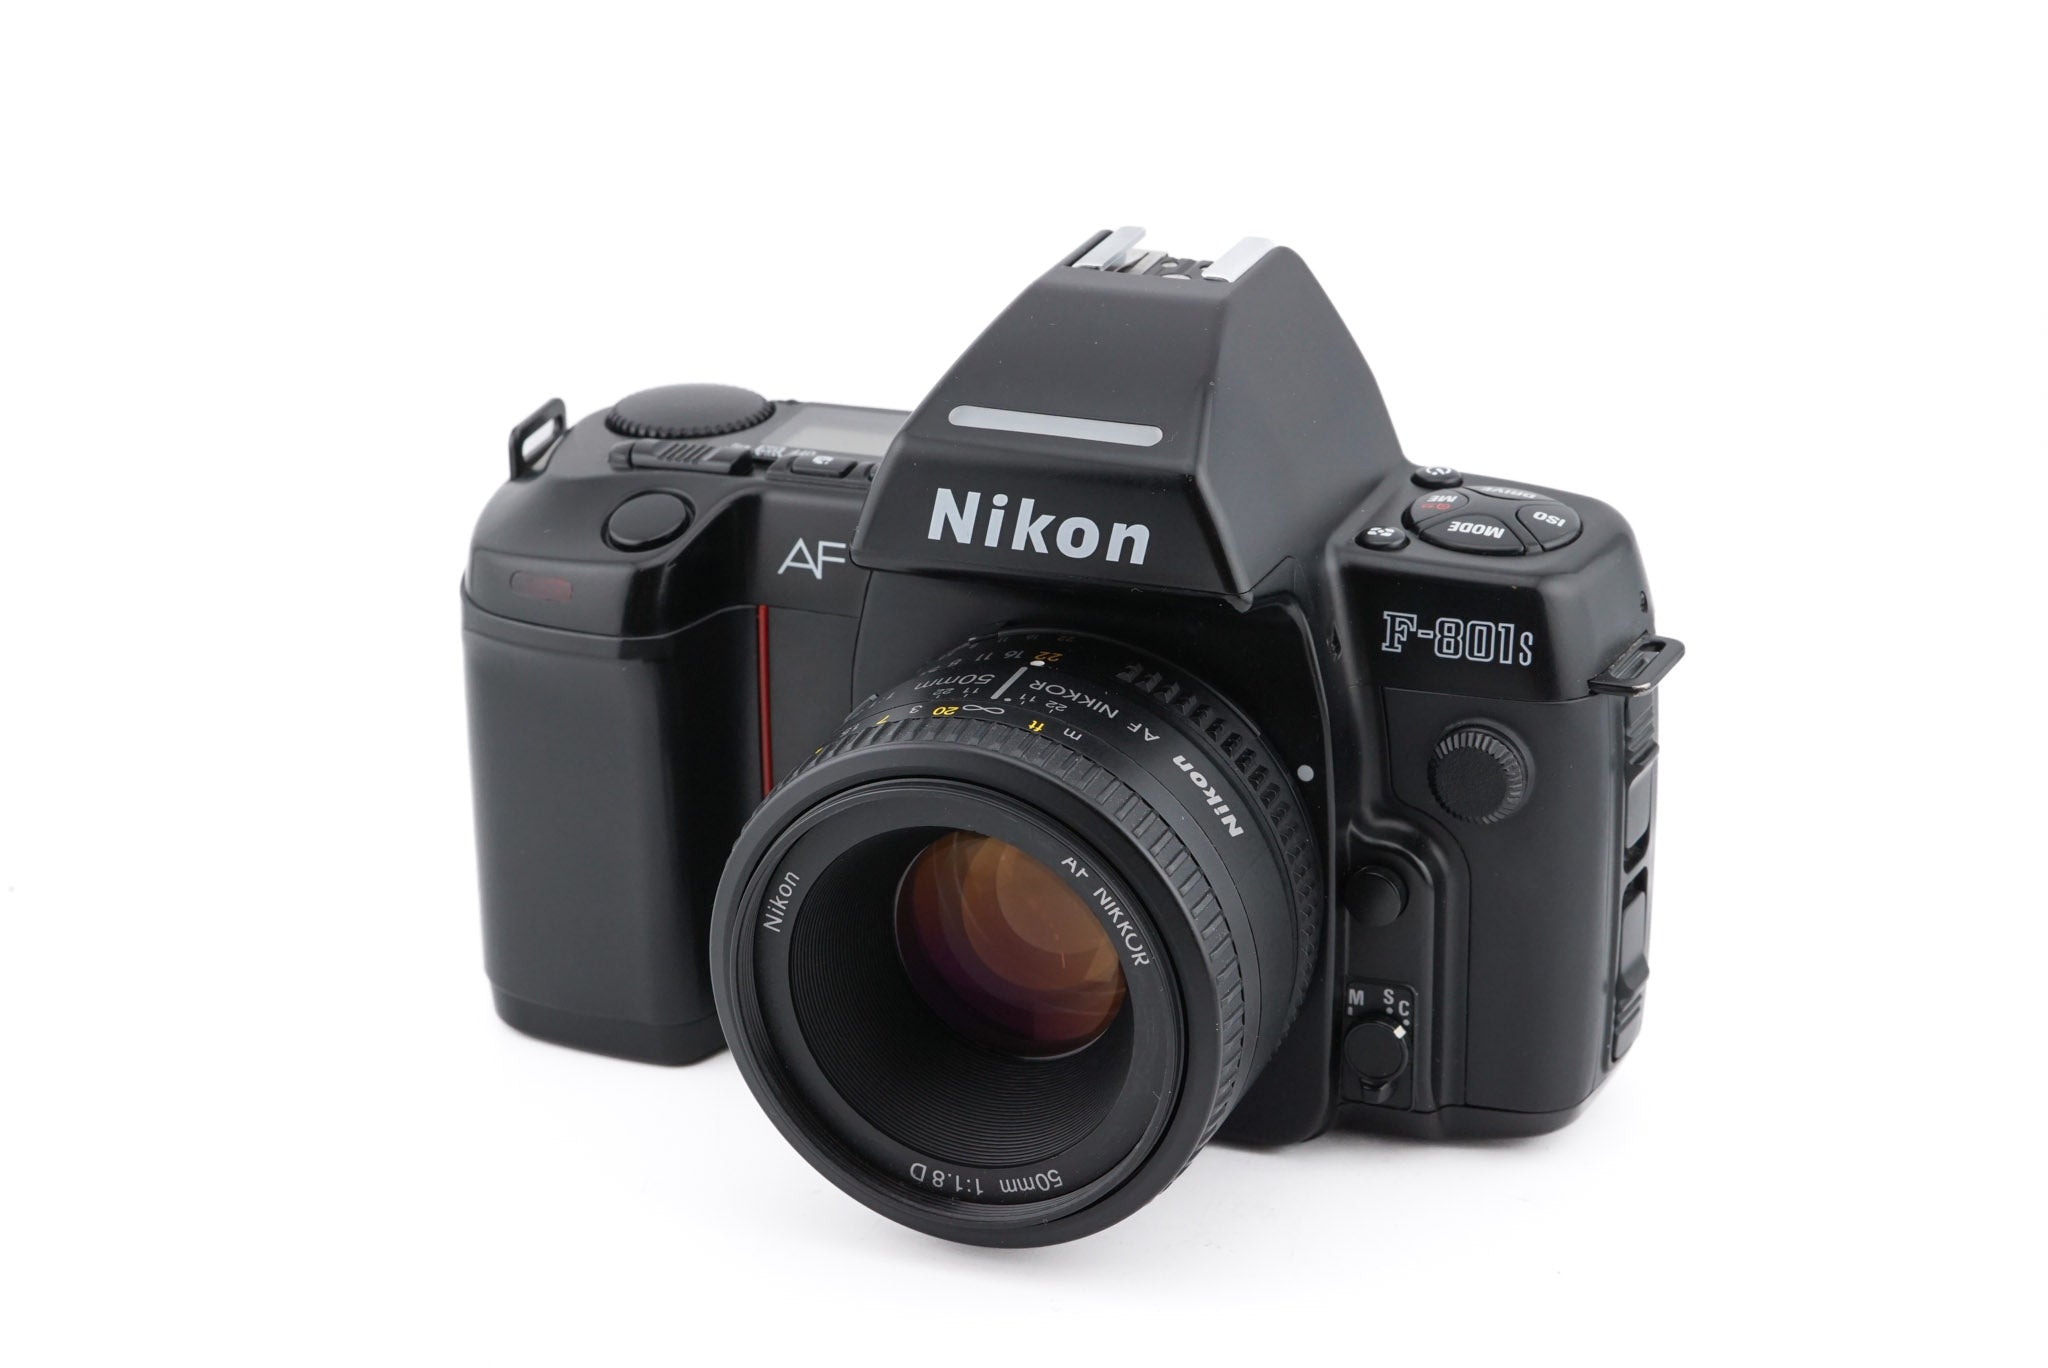 ニコンF-801s - フィルムカメラ